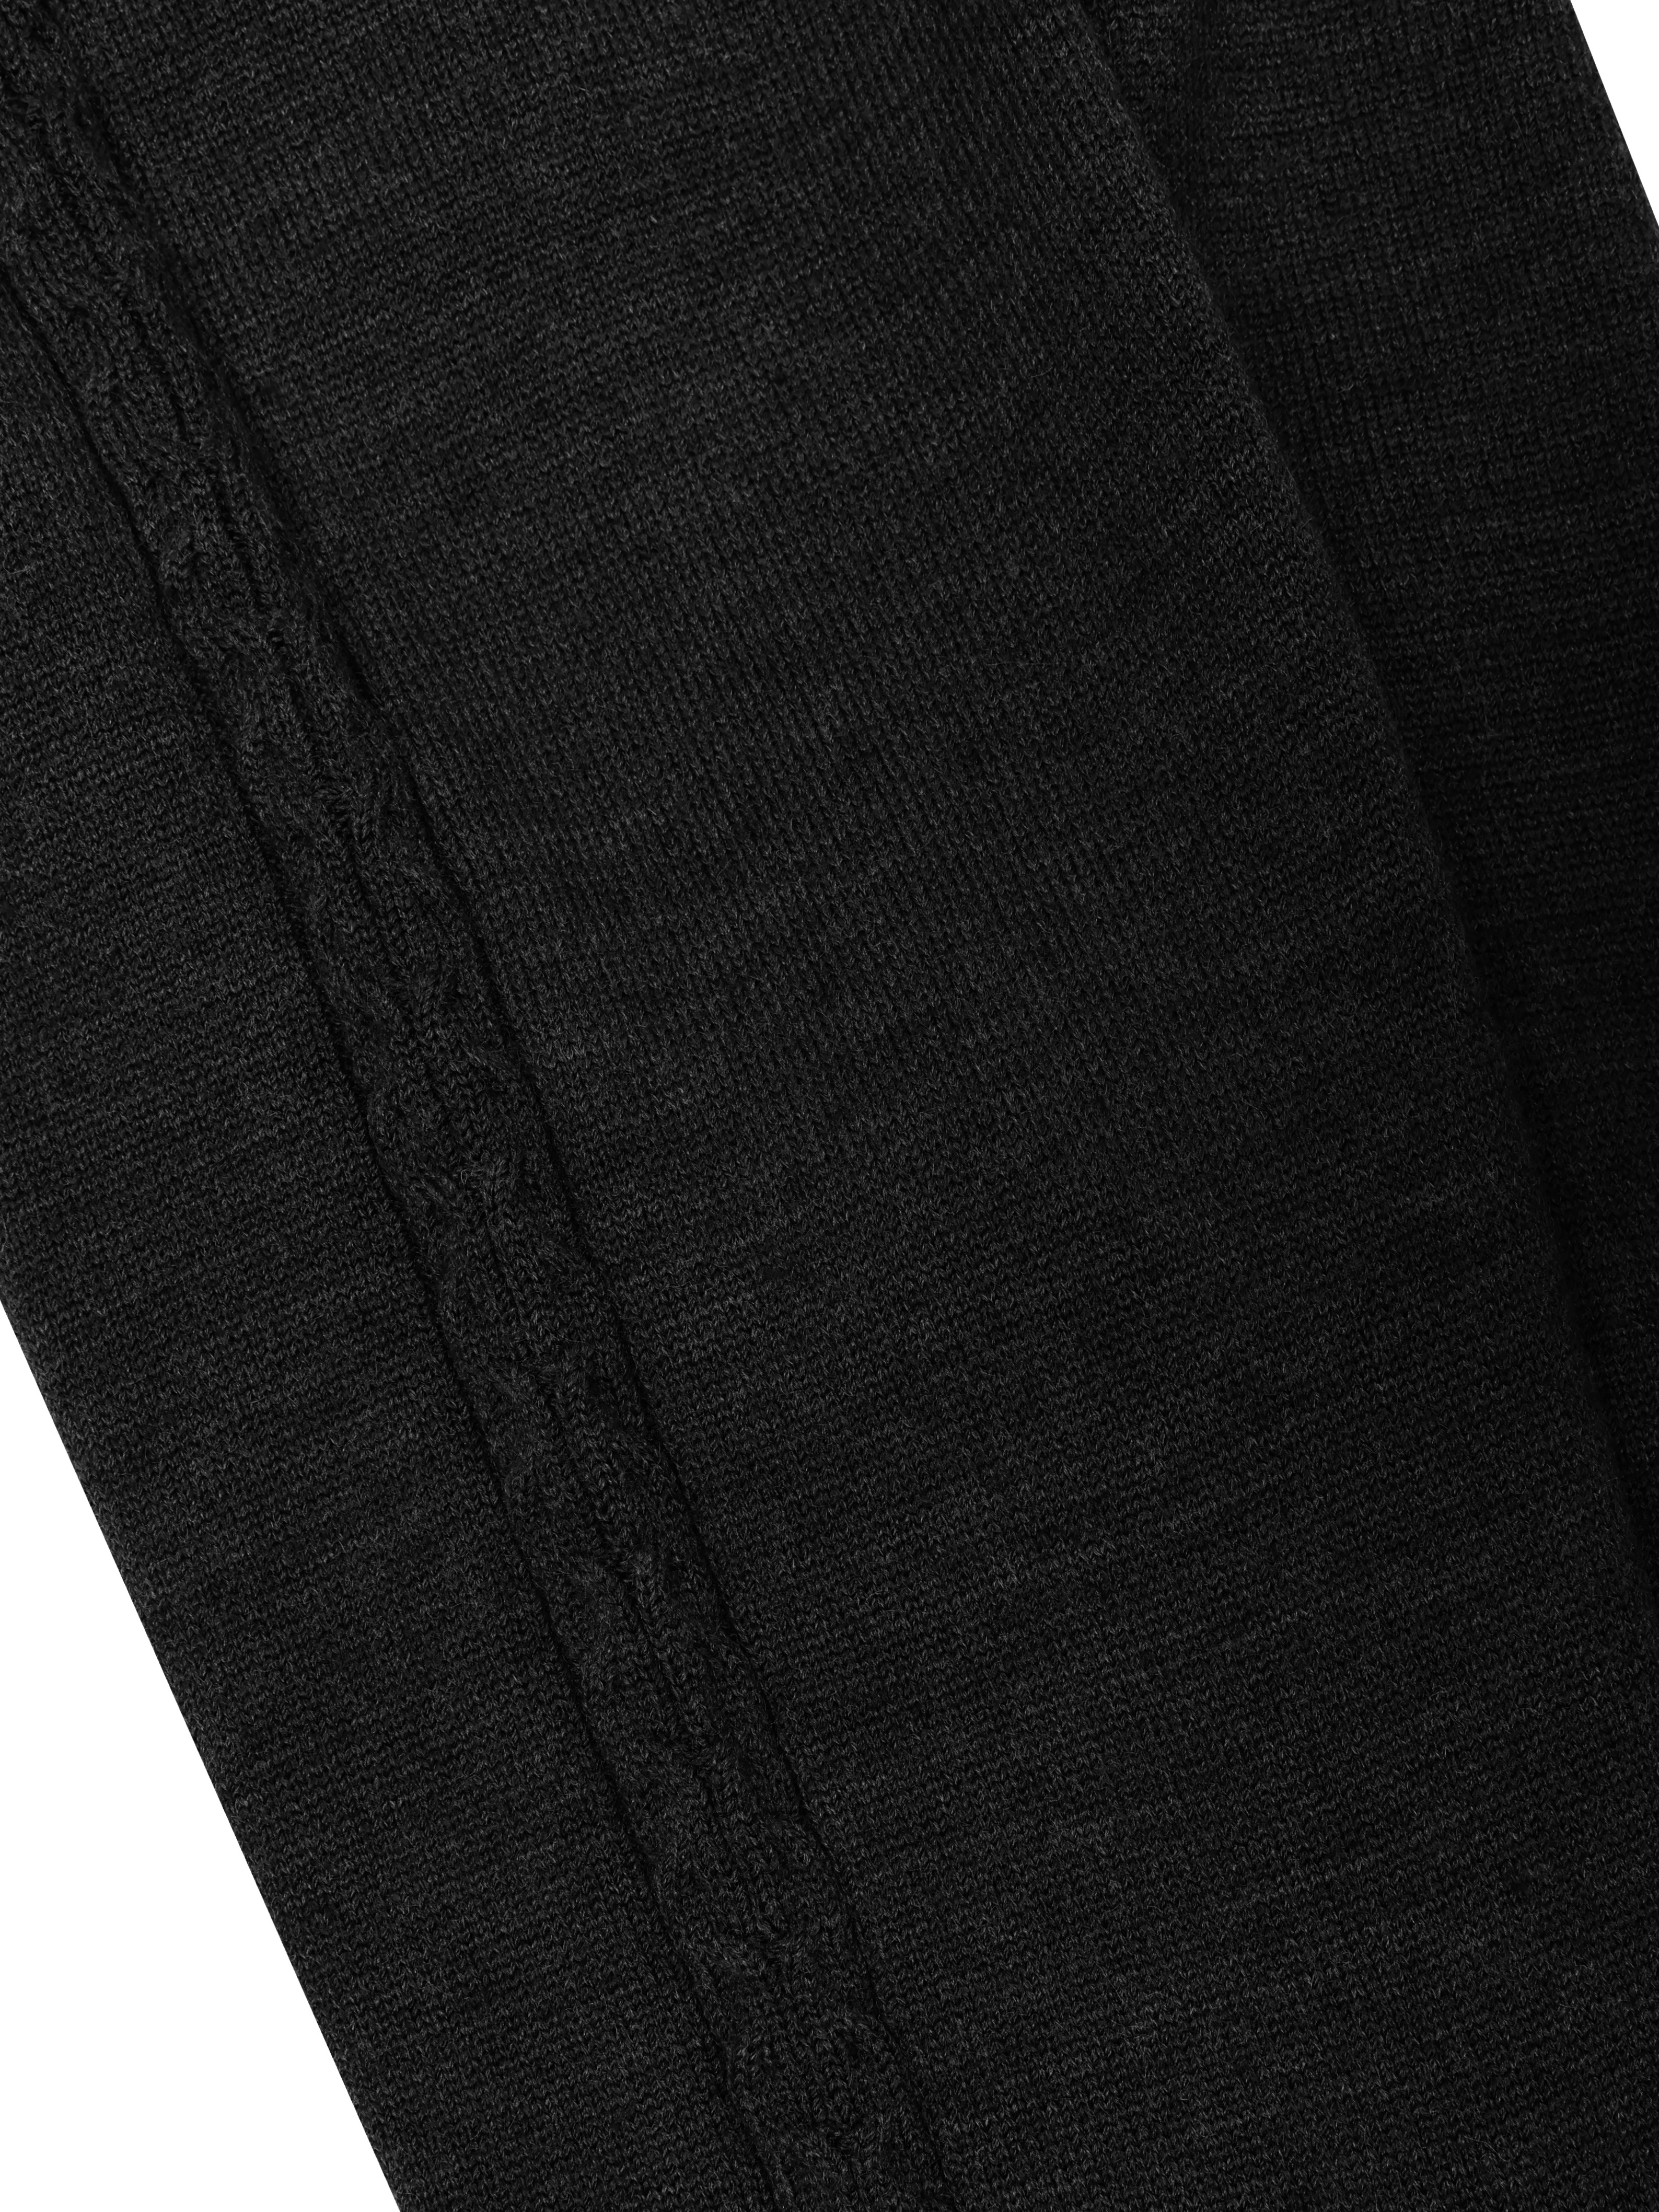 Рейтузы Dan&Dani, размер 11-12, цвет черный 42195C-18 - фото 2